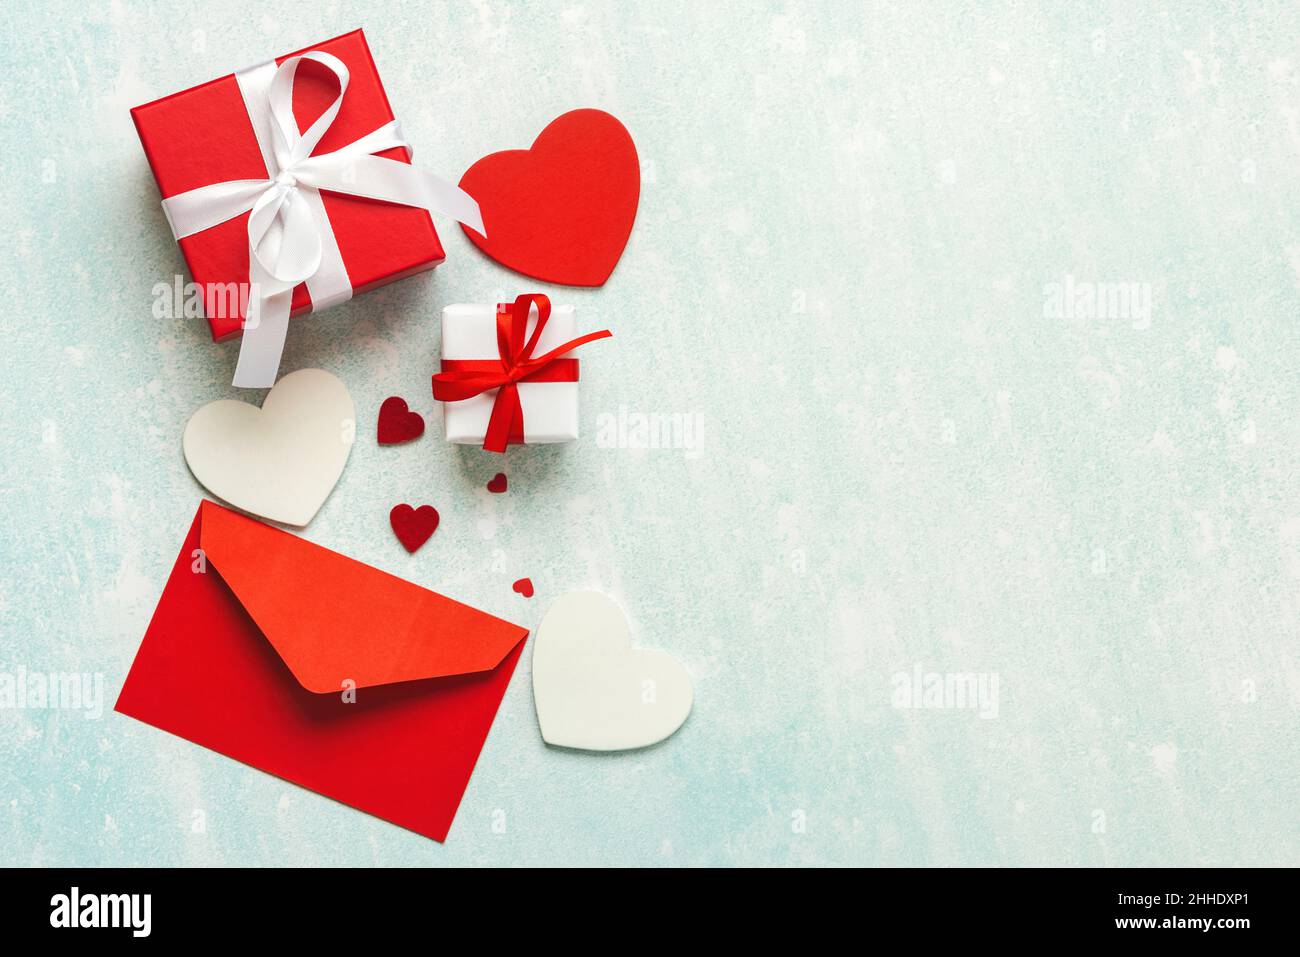 Draufsicht auf roten Umschlag, Herzen und Valentinstag Geschenkbox mit Kopieplatz auf blauem Hintergrund. Konzept für die Valentinstag-Feier Stockfoto